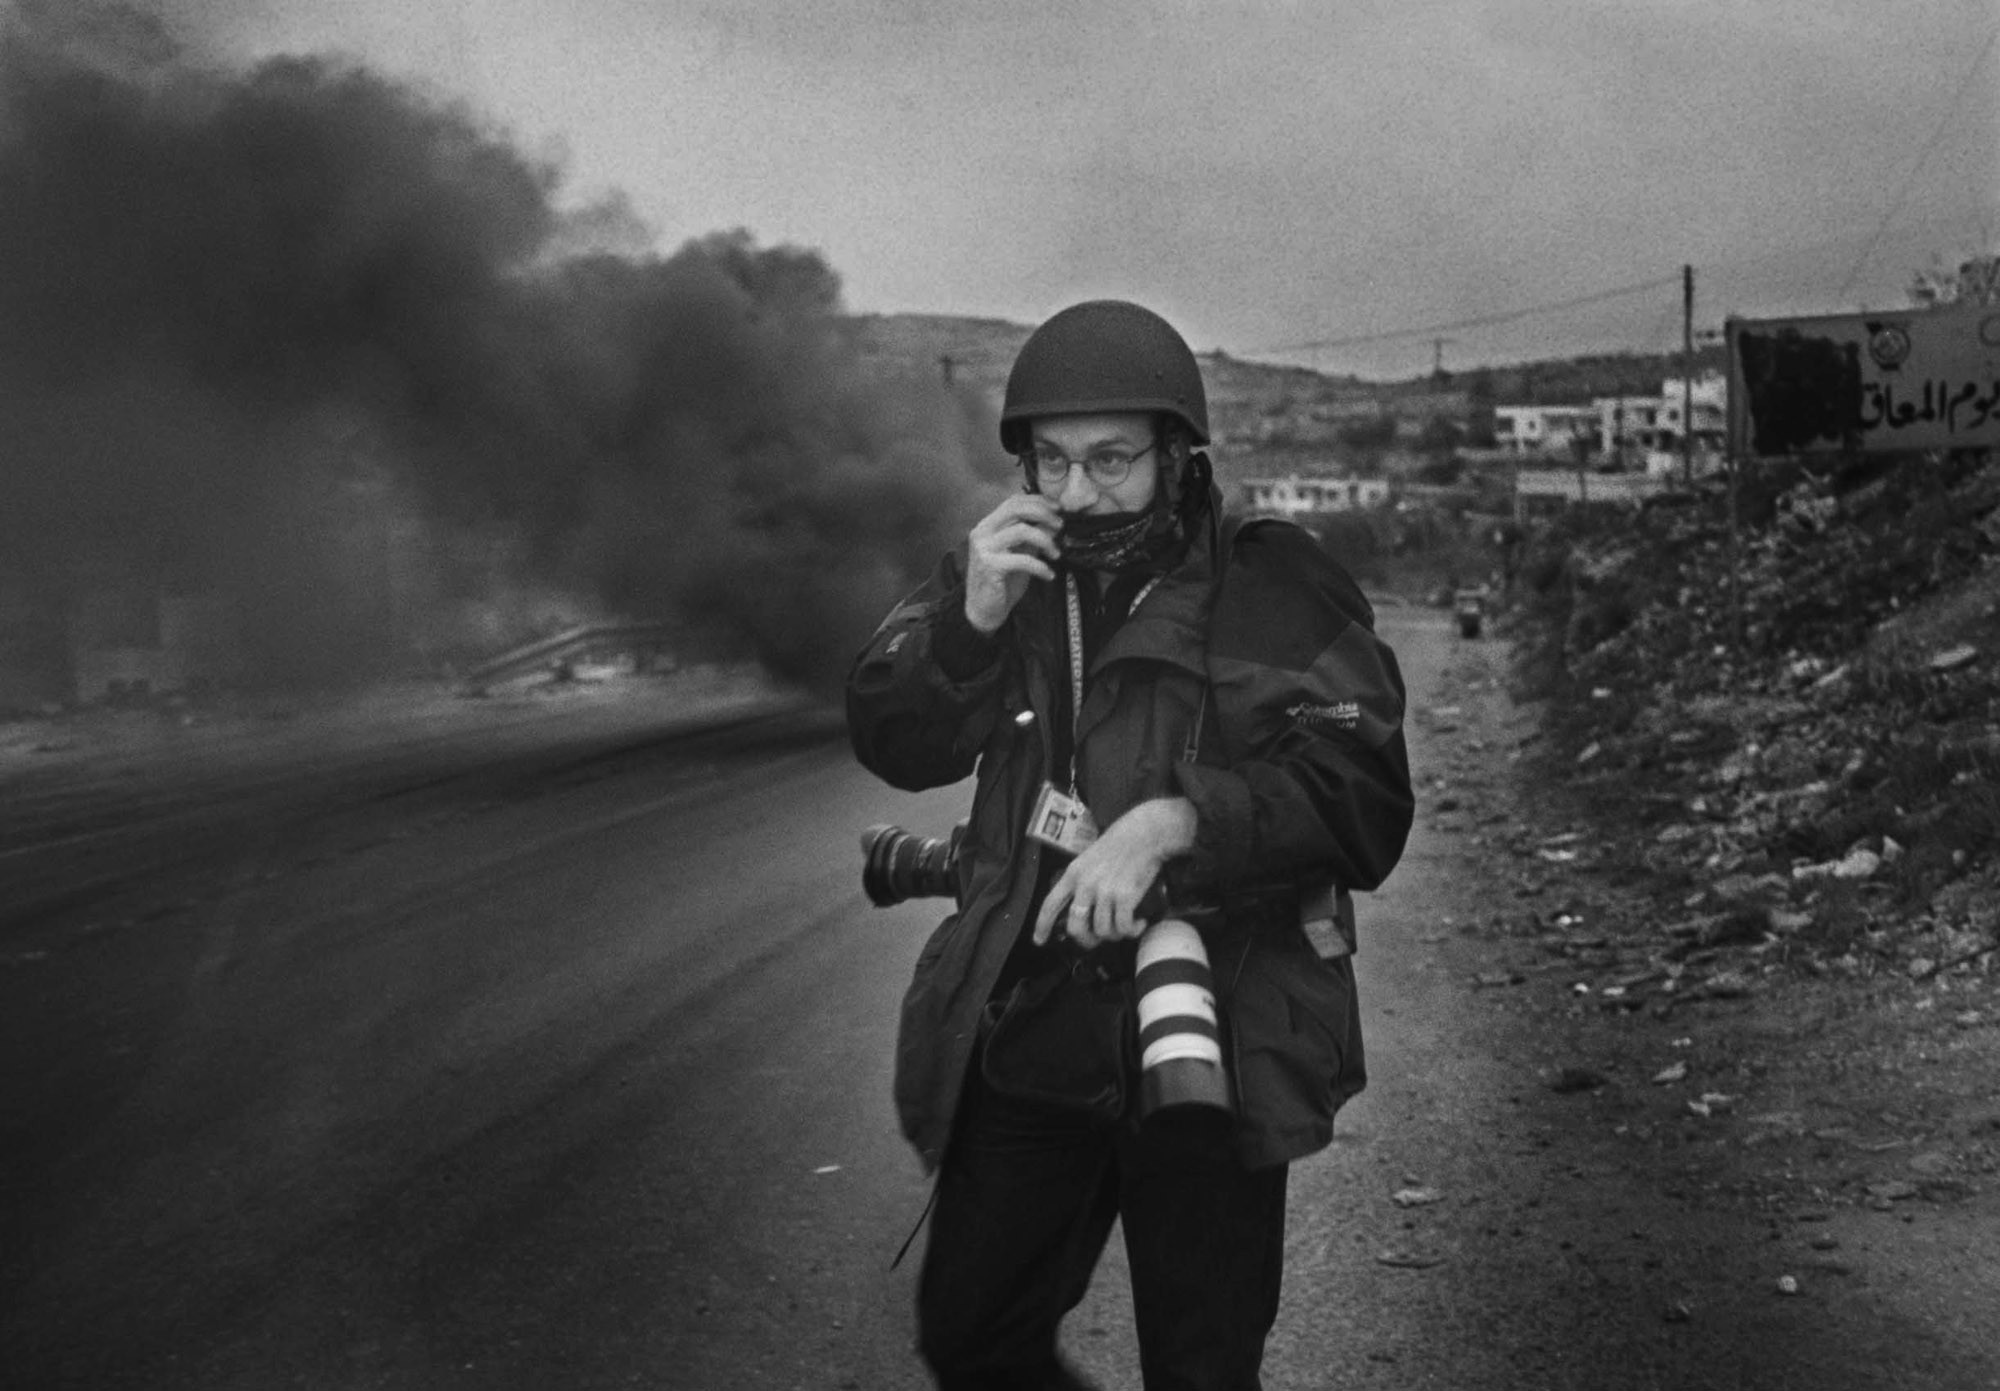 Τί πρέπει να κάνουμε; Απαντά ο φωτοδημοσιογράφος Λευτέρης Πιταράκης